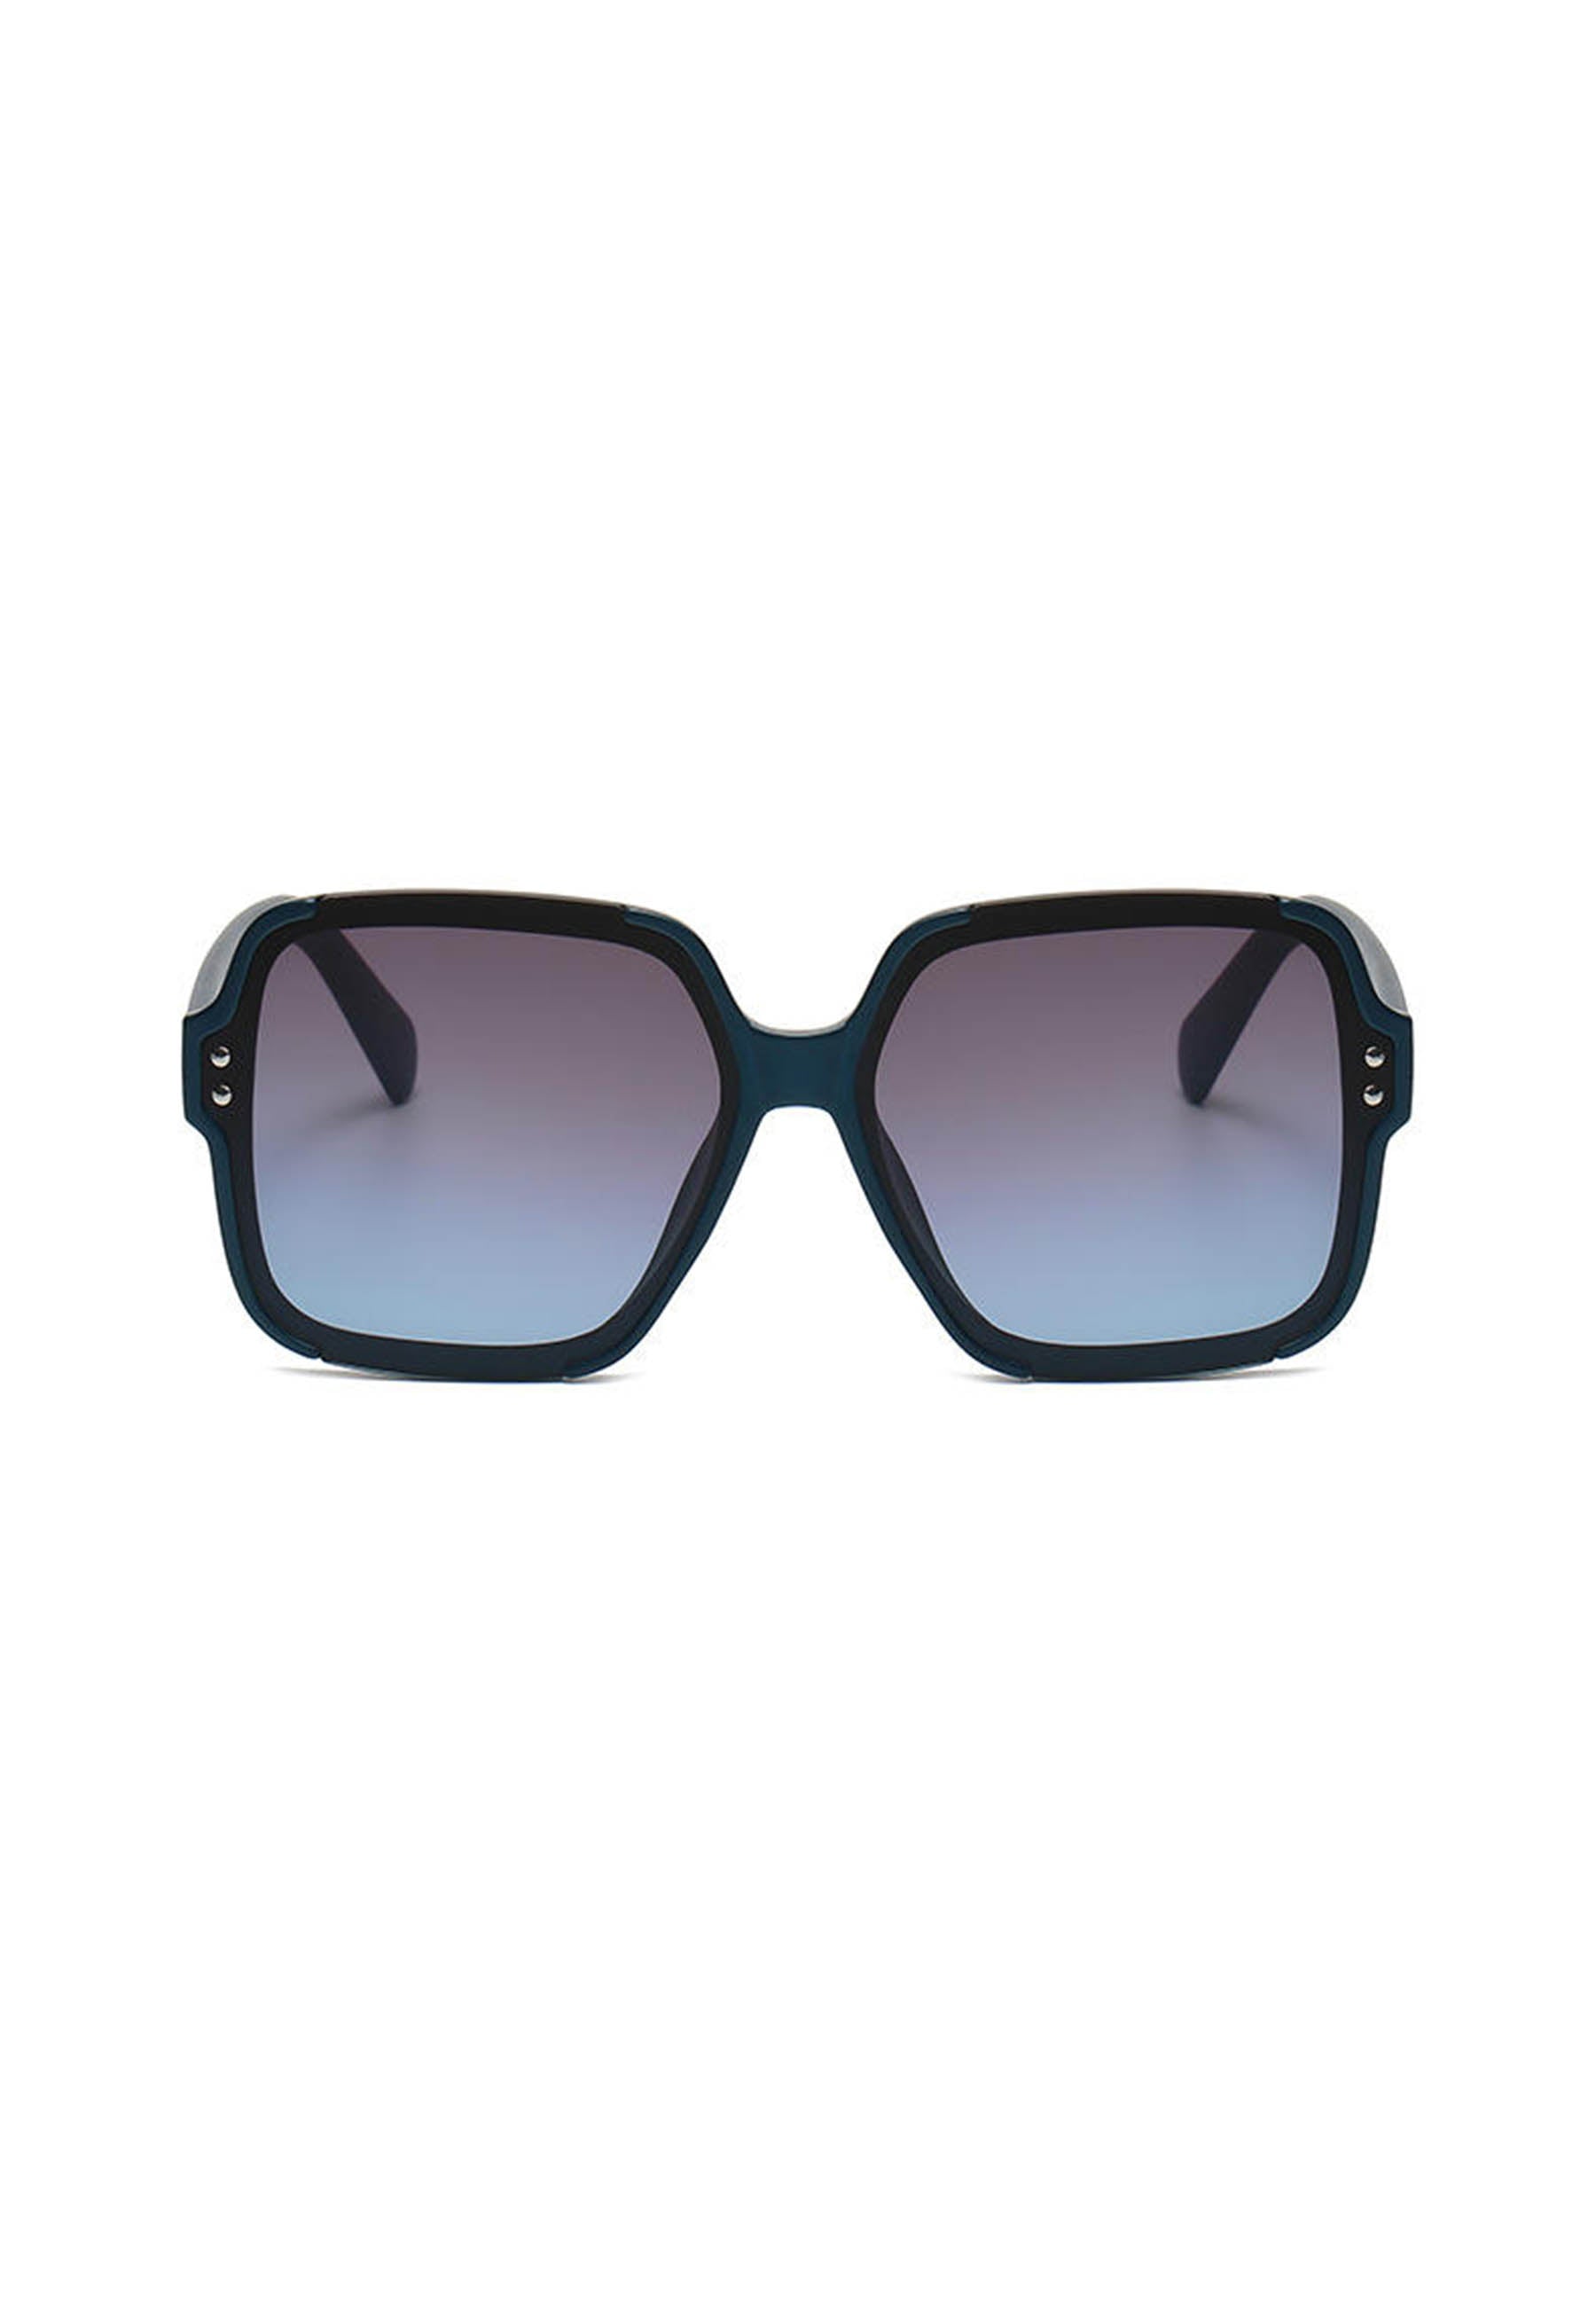 Kwadratowe okulary przeciwsłoneczne oversize